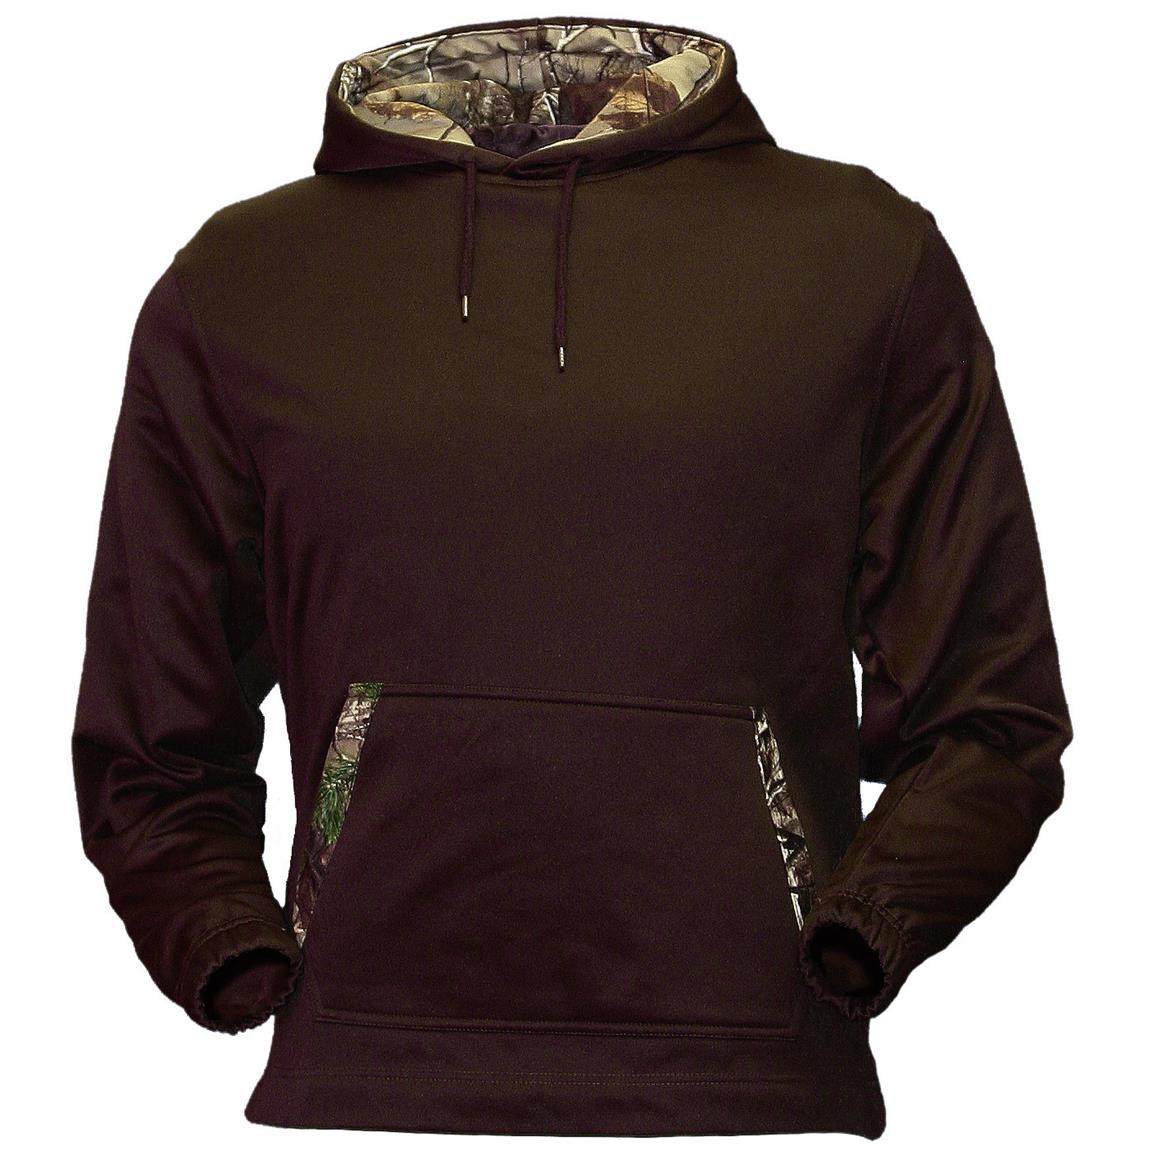 Under Armour Big Logo Camo Fleece Hooded Sweatshirt - 592258, Lifestyle ...